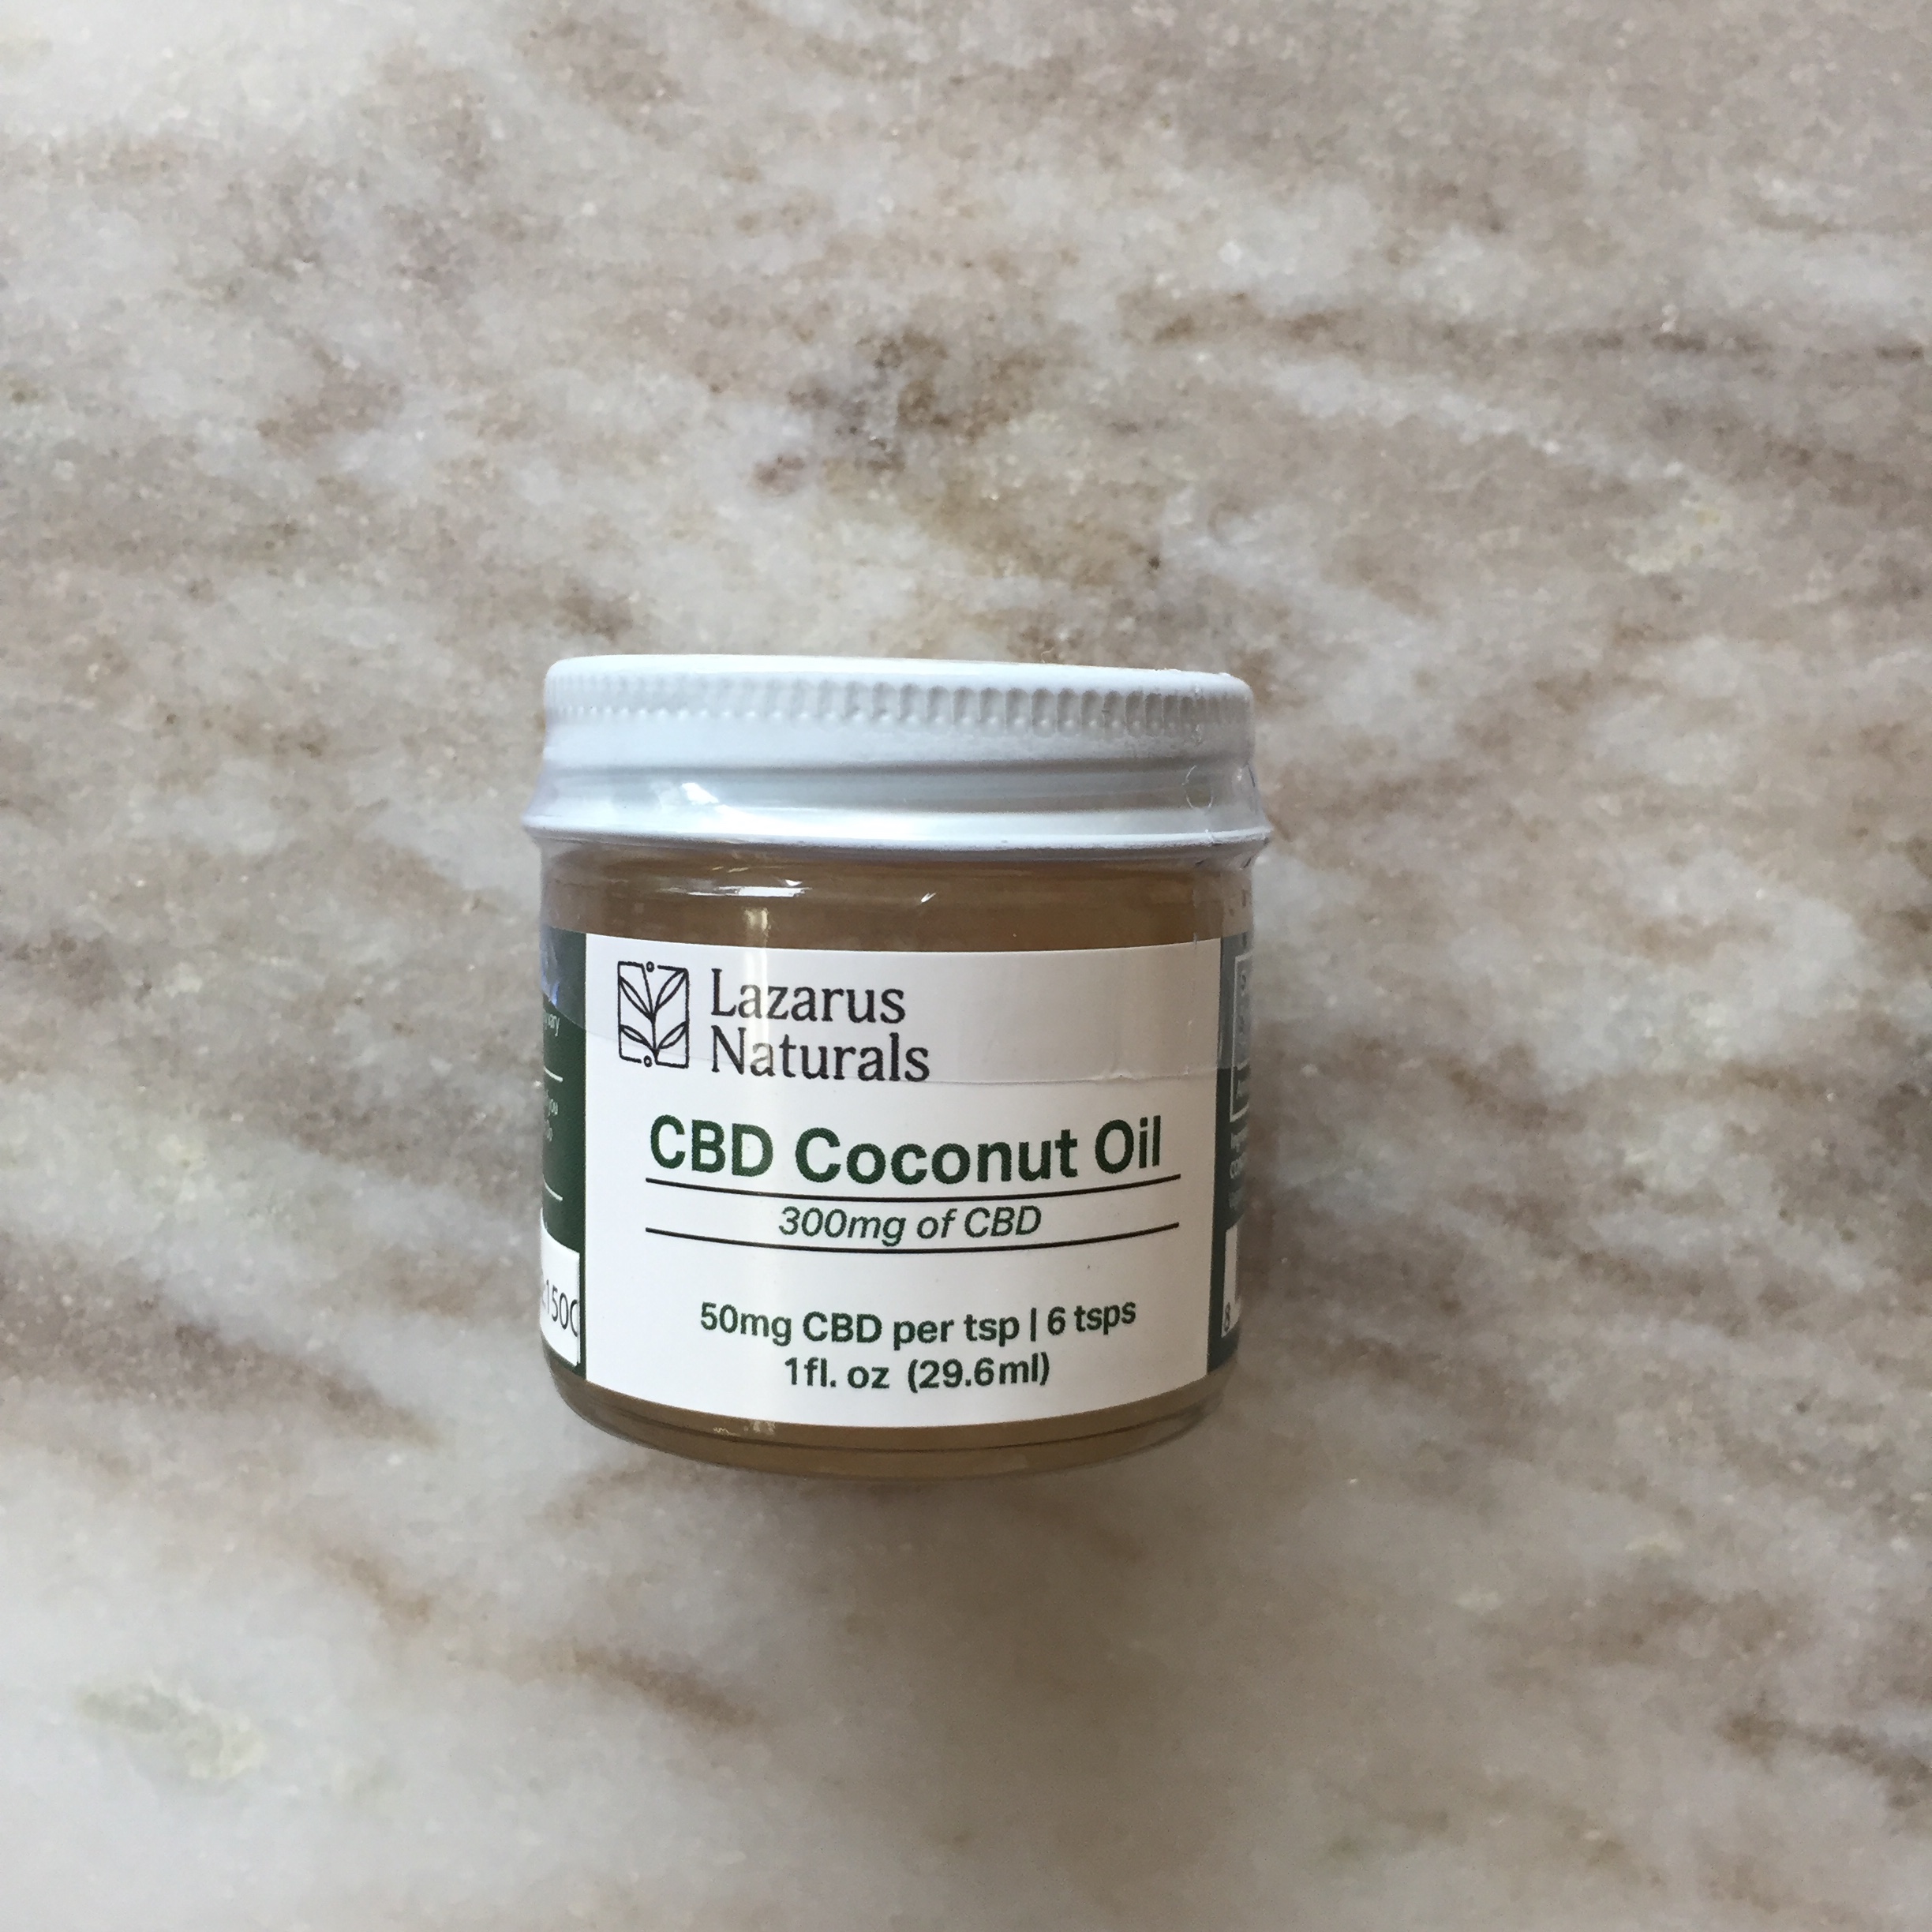 Lazarus naturals cbd coconut oil